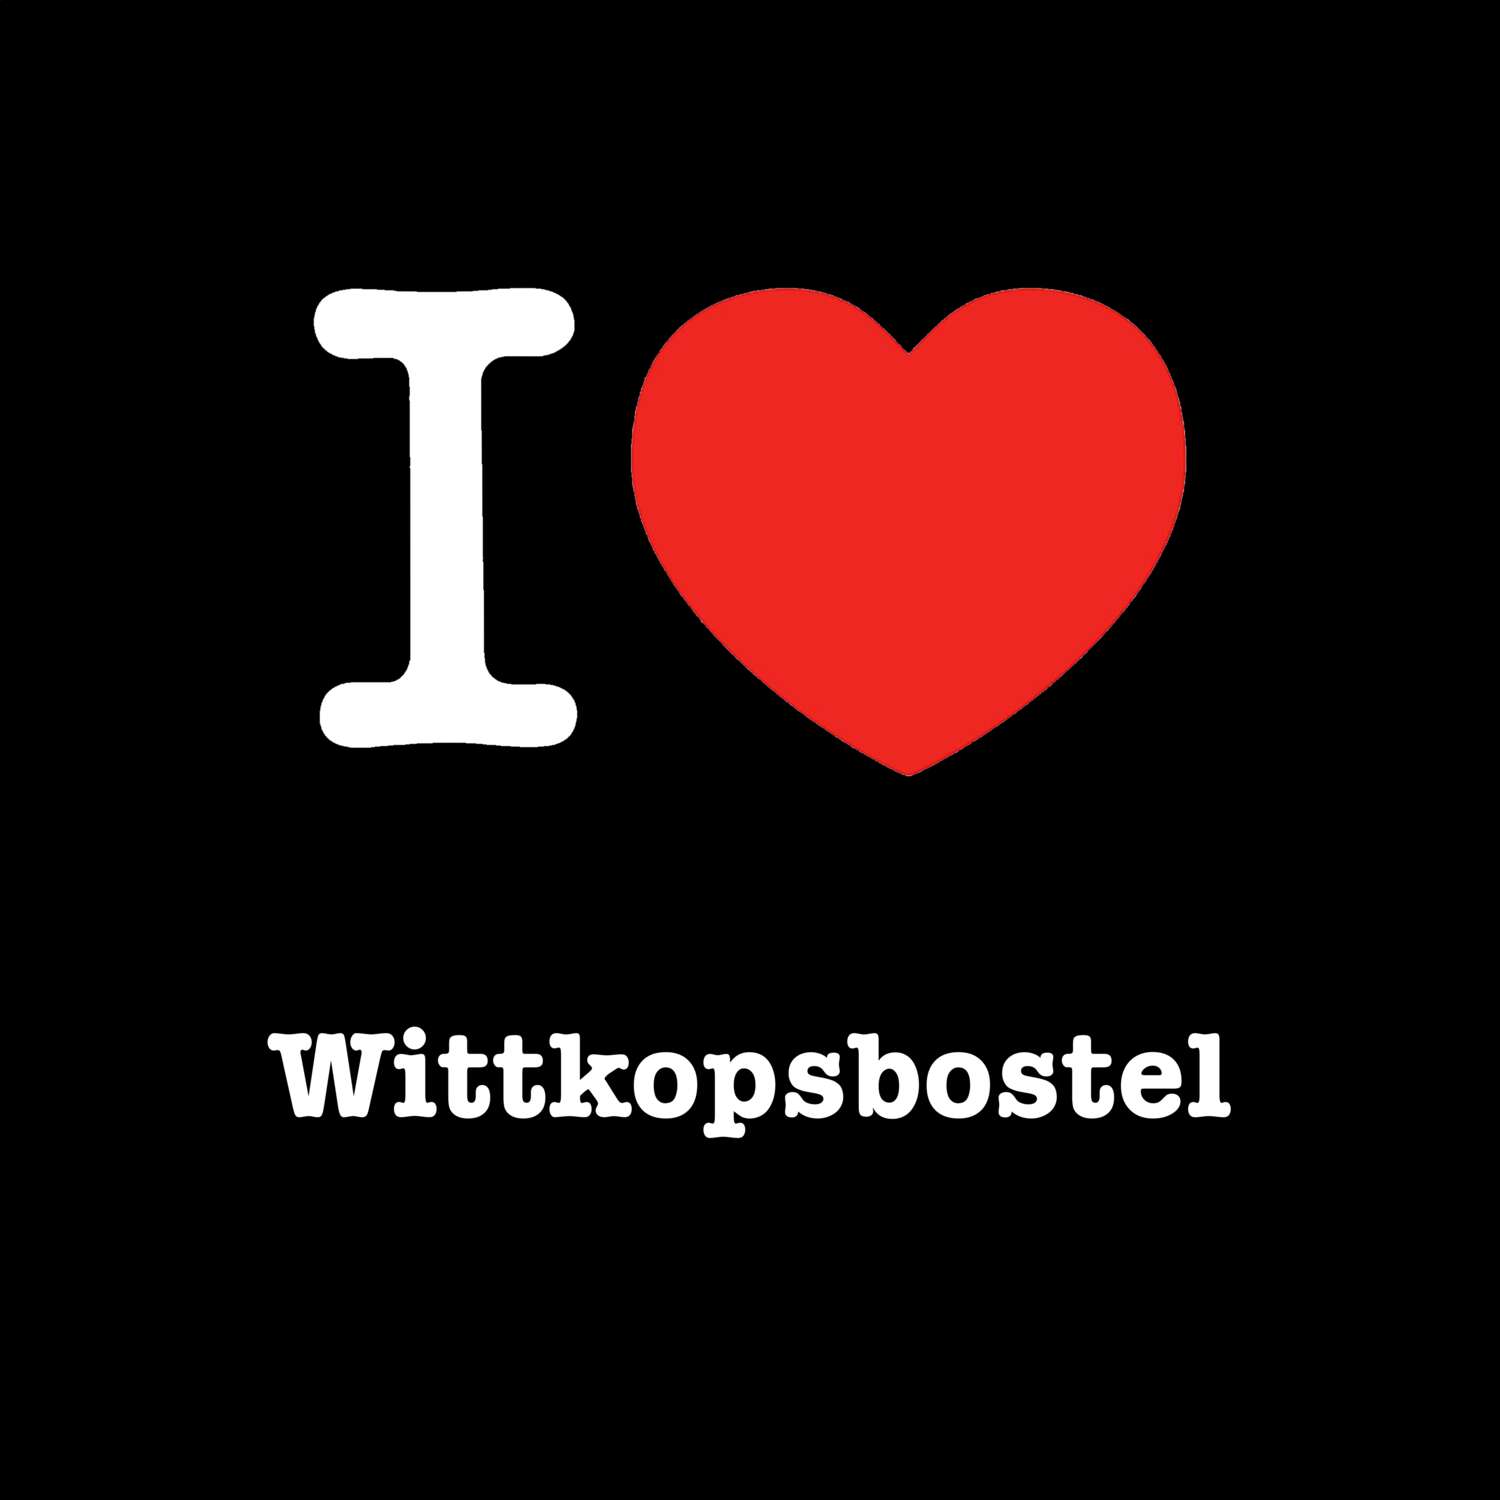 Wittkopsbostel T-Shirt »I love«